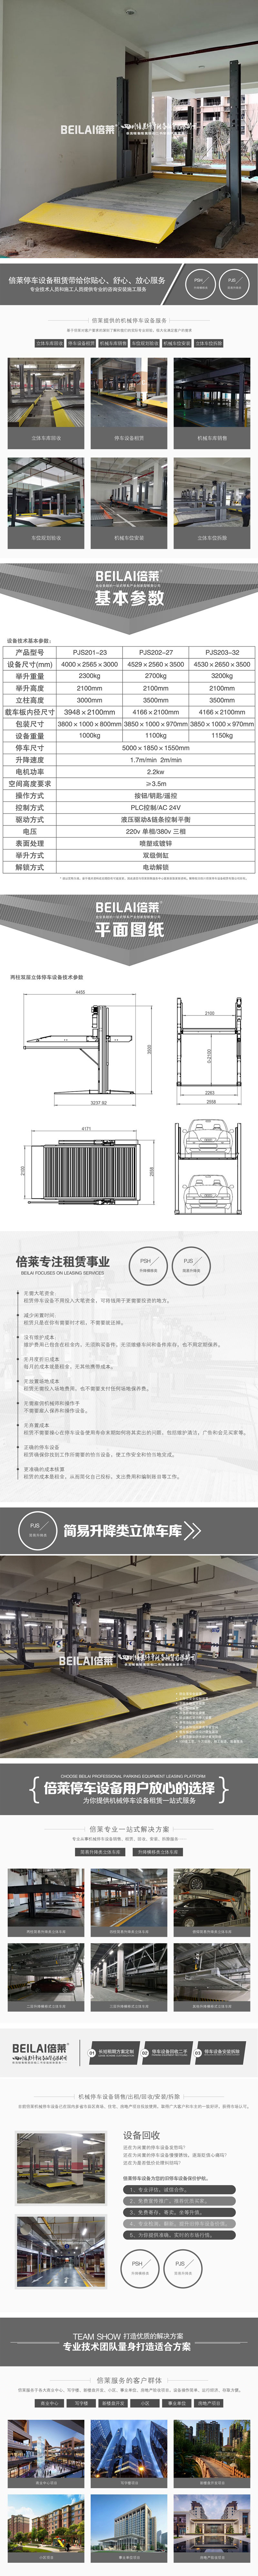 甘肃省民乐机械式车库双层,子母式停车设备出租,倍莱机械车库租赁经营